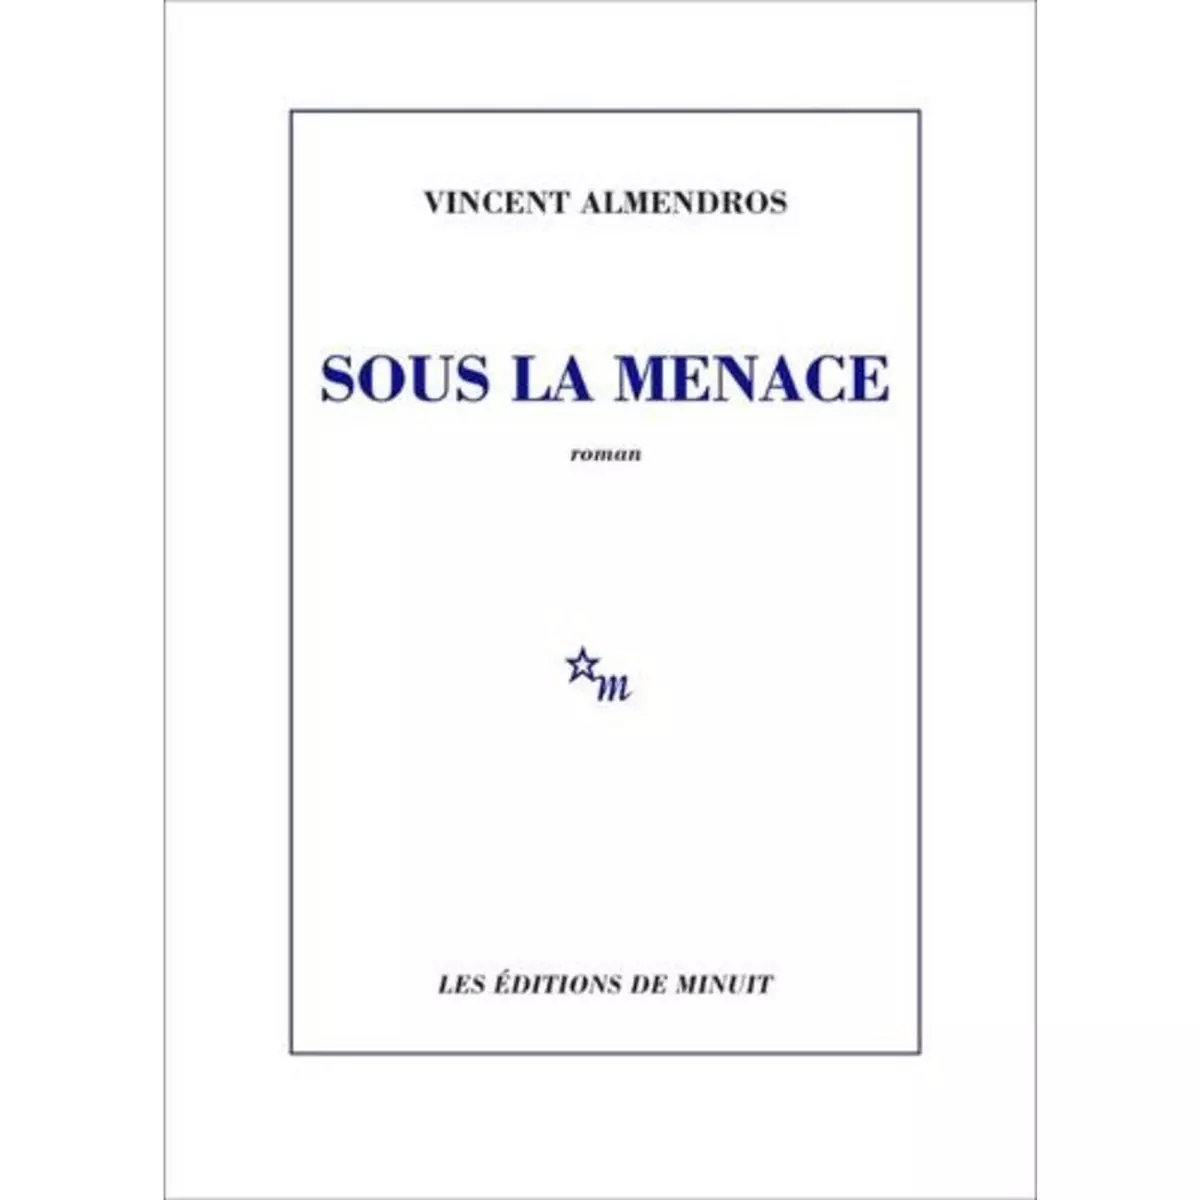  SOUS LA MENACE, Almendros Vincent